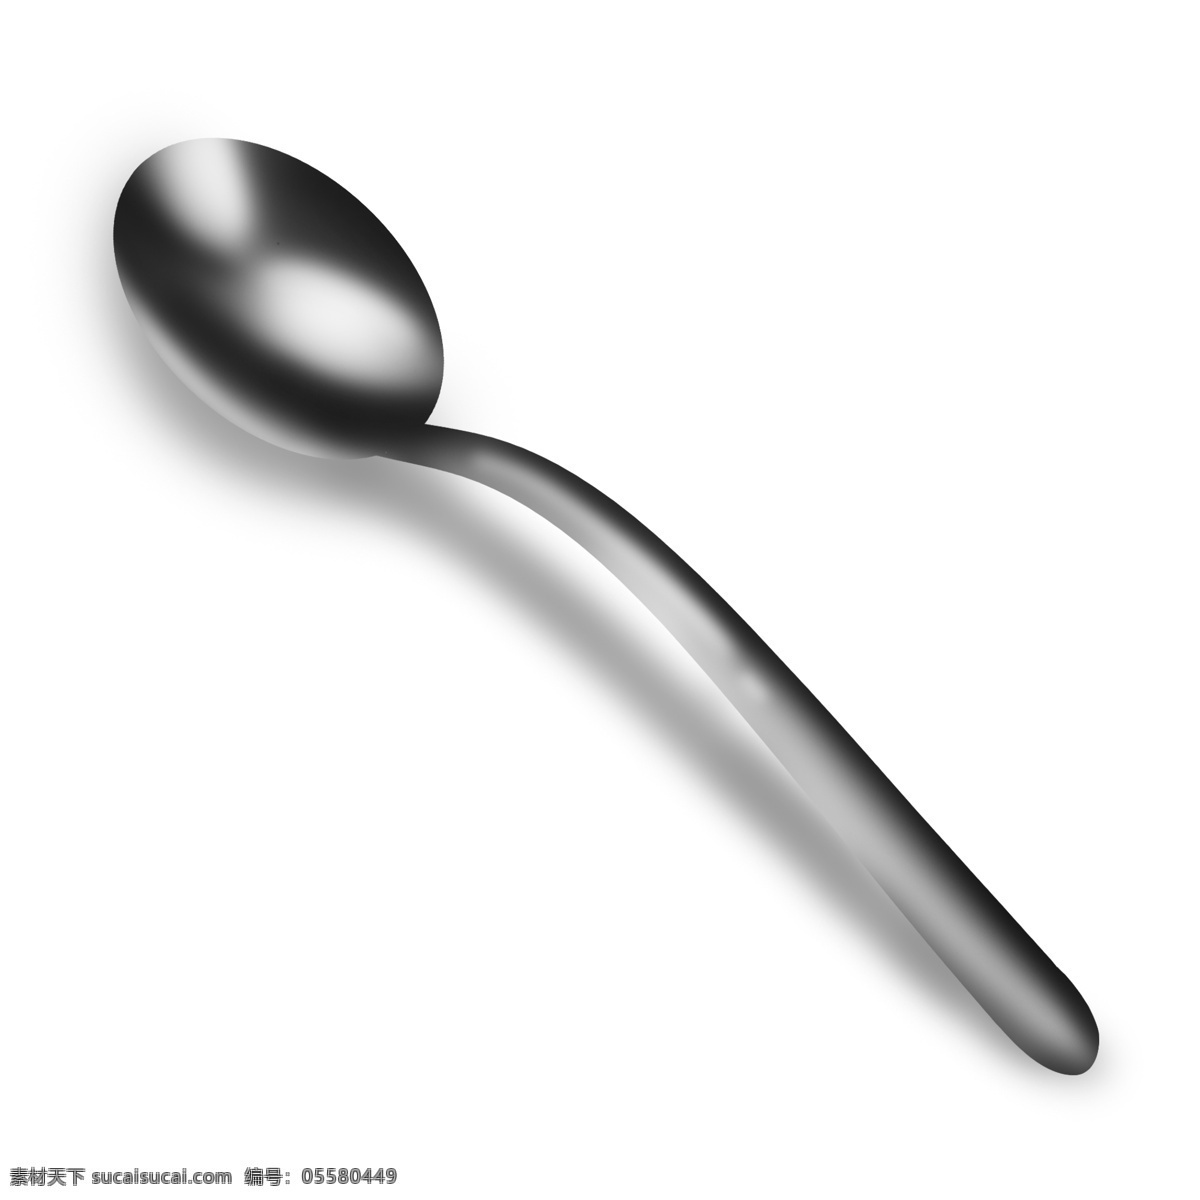 银灰色 椭圆形 长条 勺子 汤勺 圆形 立体 灰色 银色 银质感 金属质感 餐具 长柄